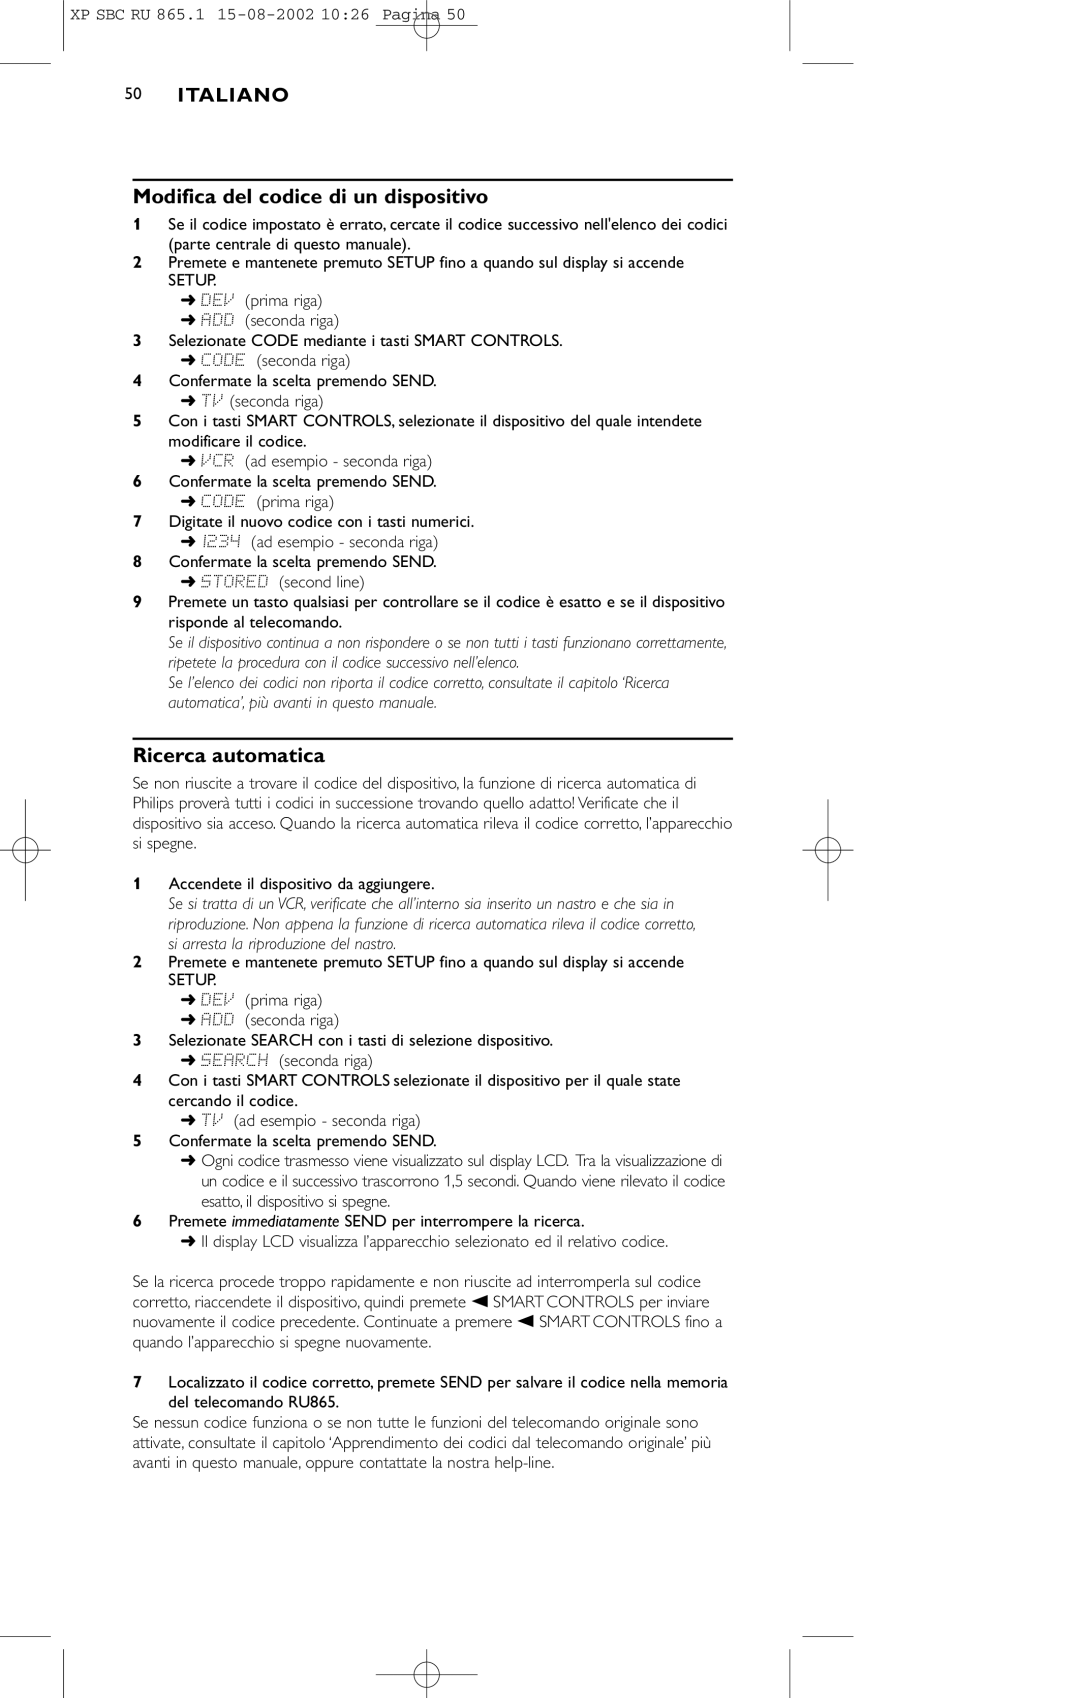 Philips SBC RU 865/00 manual Modifica del codice di un dispositivo, Ricerca automatica 